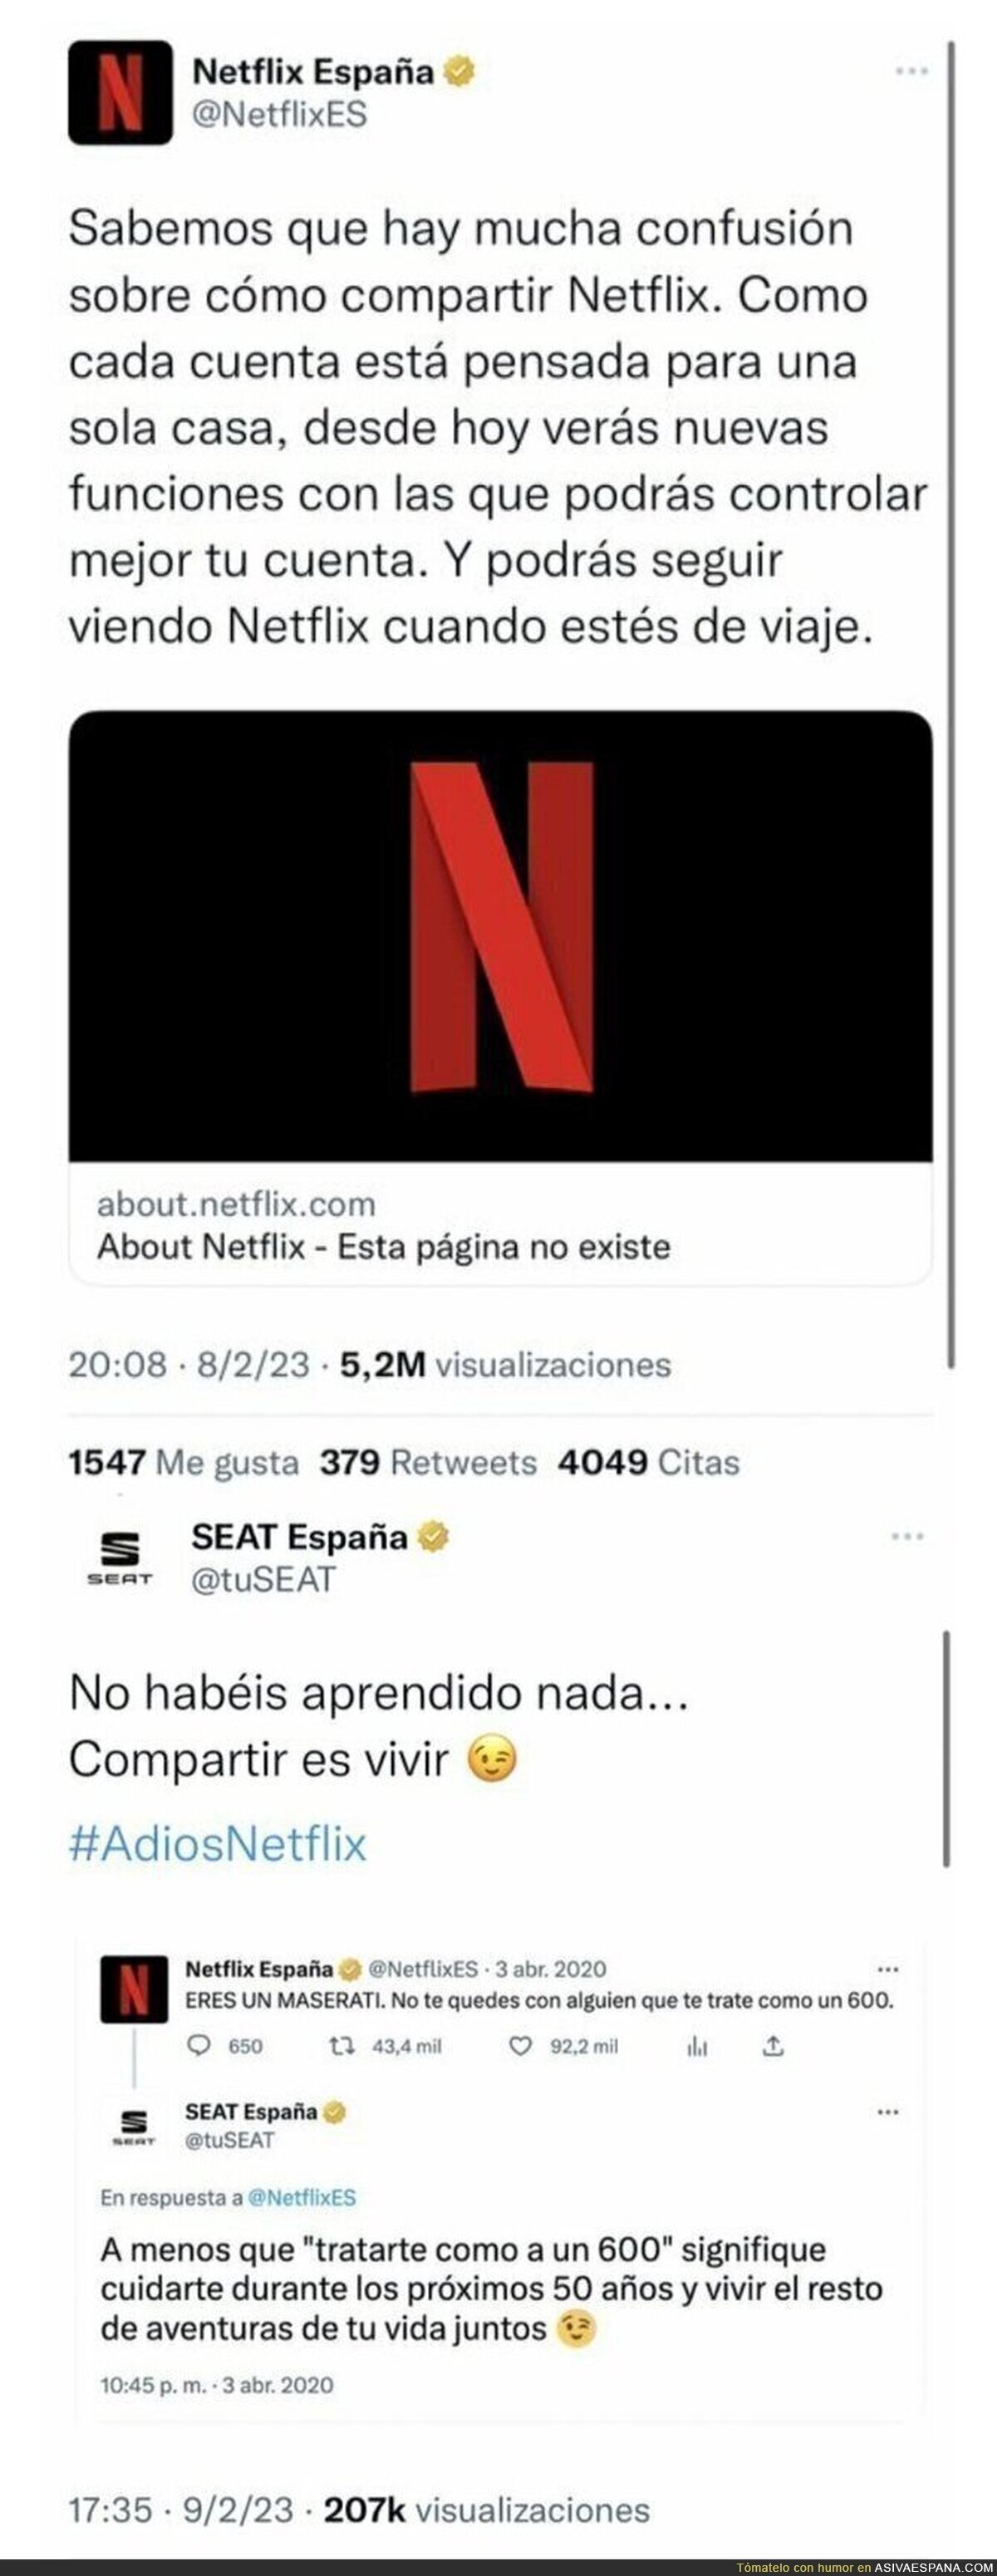 El revés antológico de SEAT a Netflix tras la polémica de las cuentas compartidas